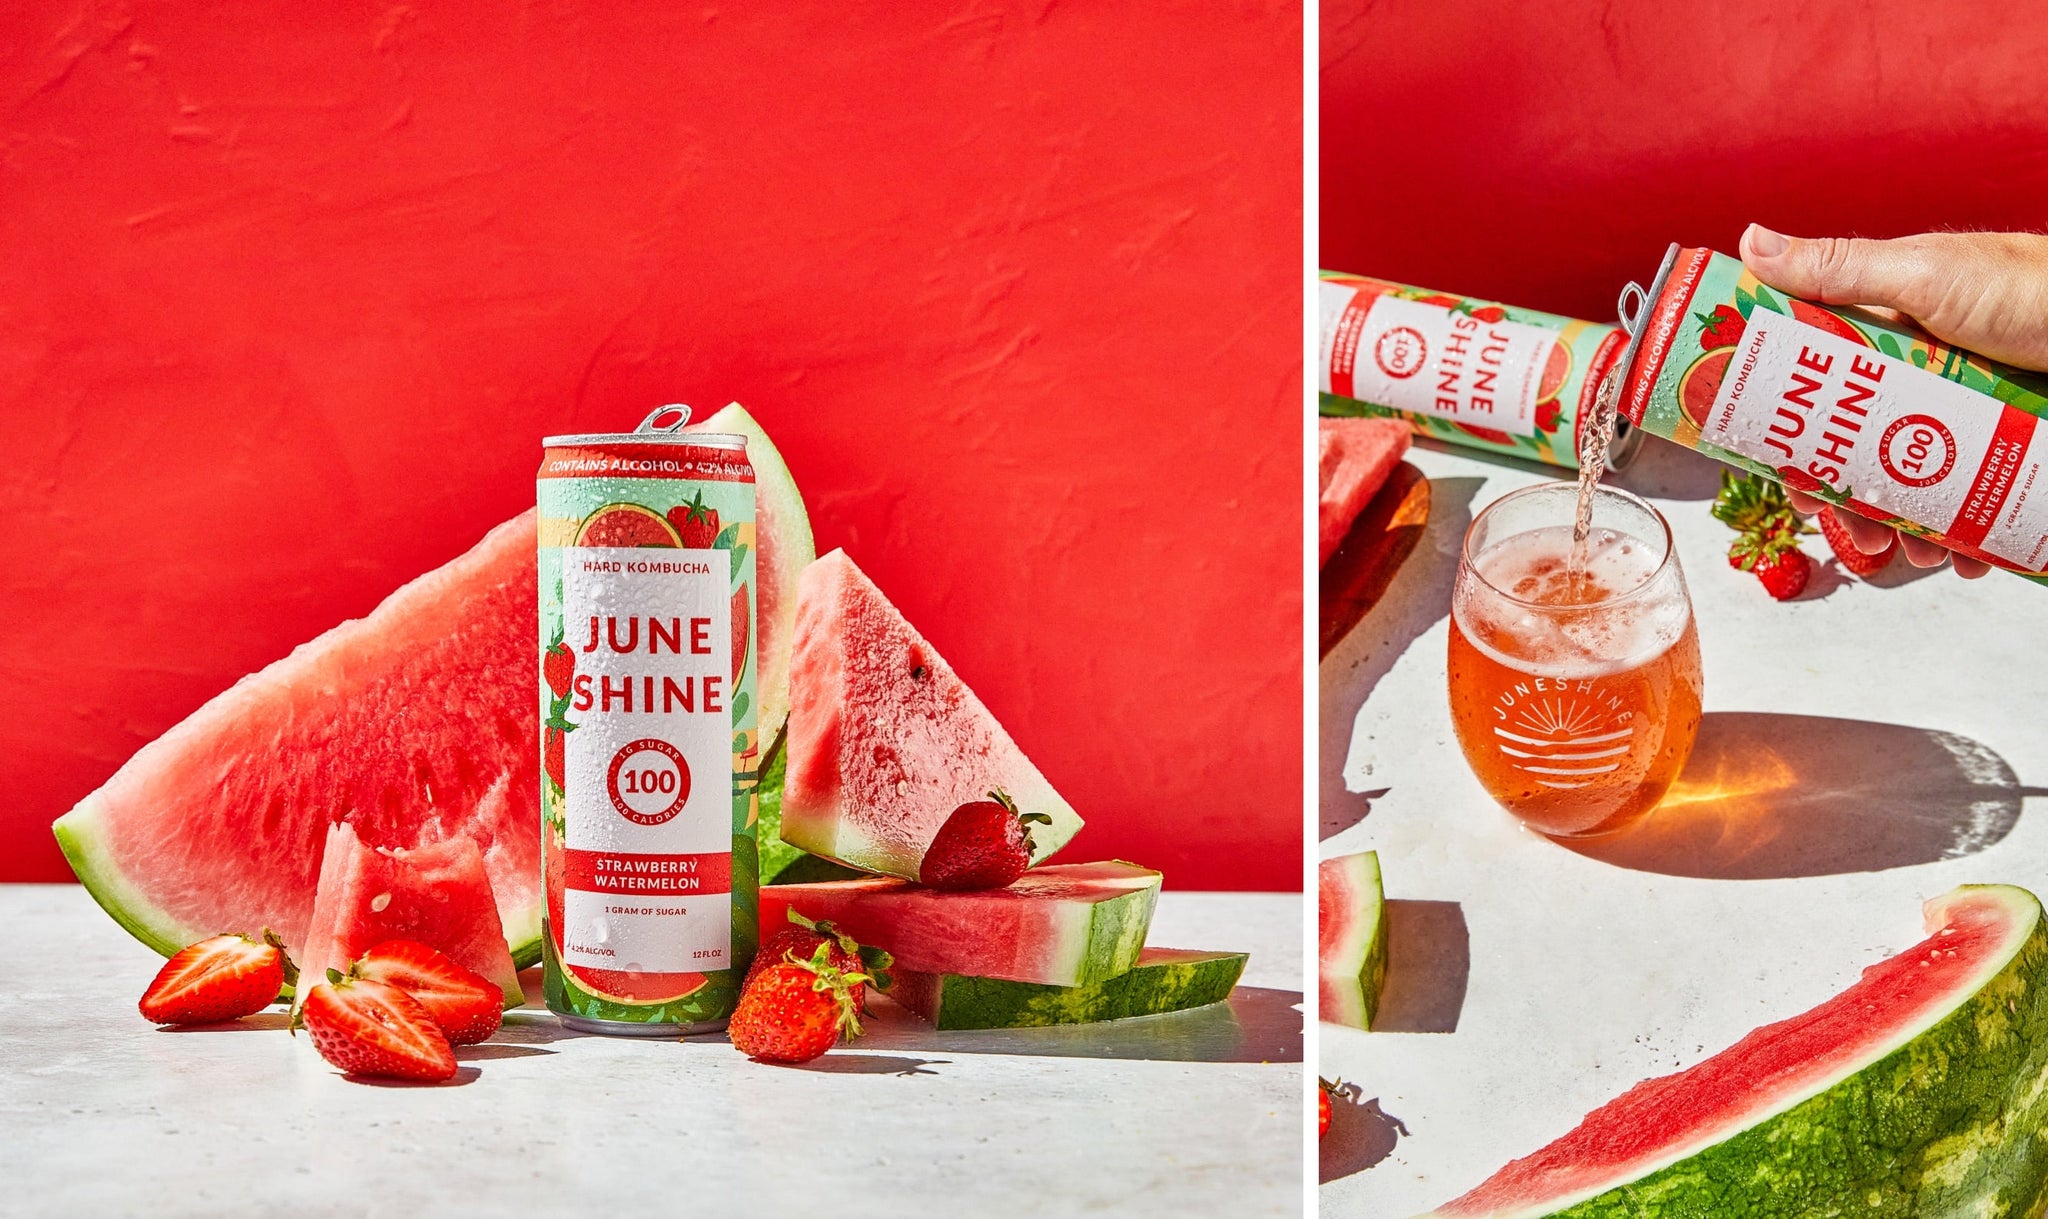 Nick Kuchar Can Design for JuneShine Strawberry Watermelon Hard Kombucha